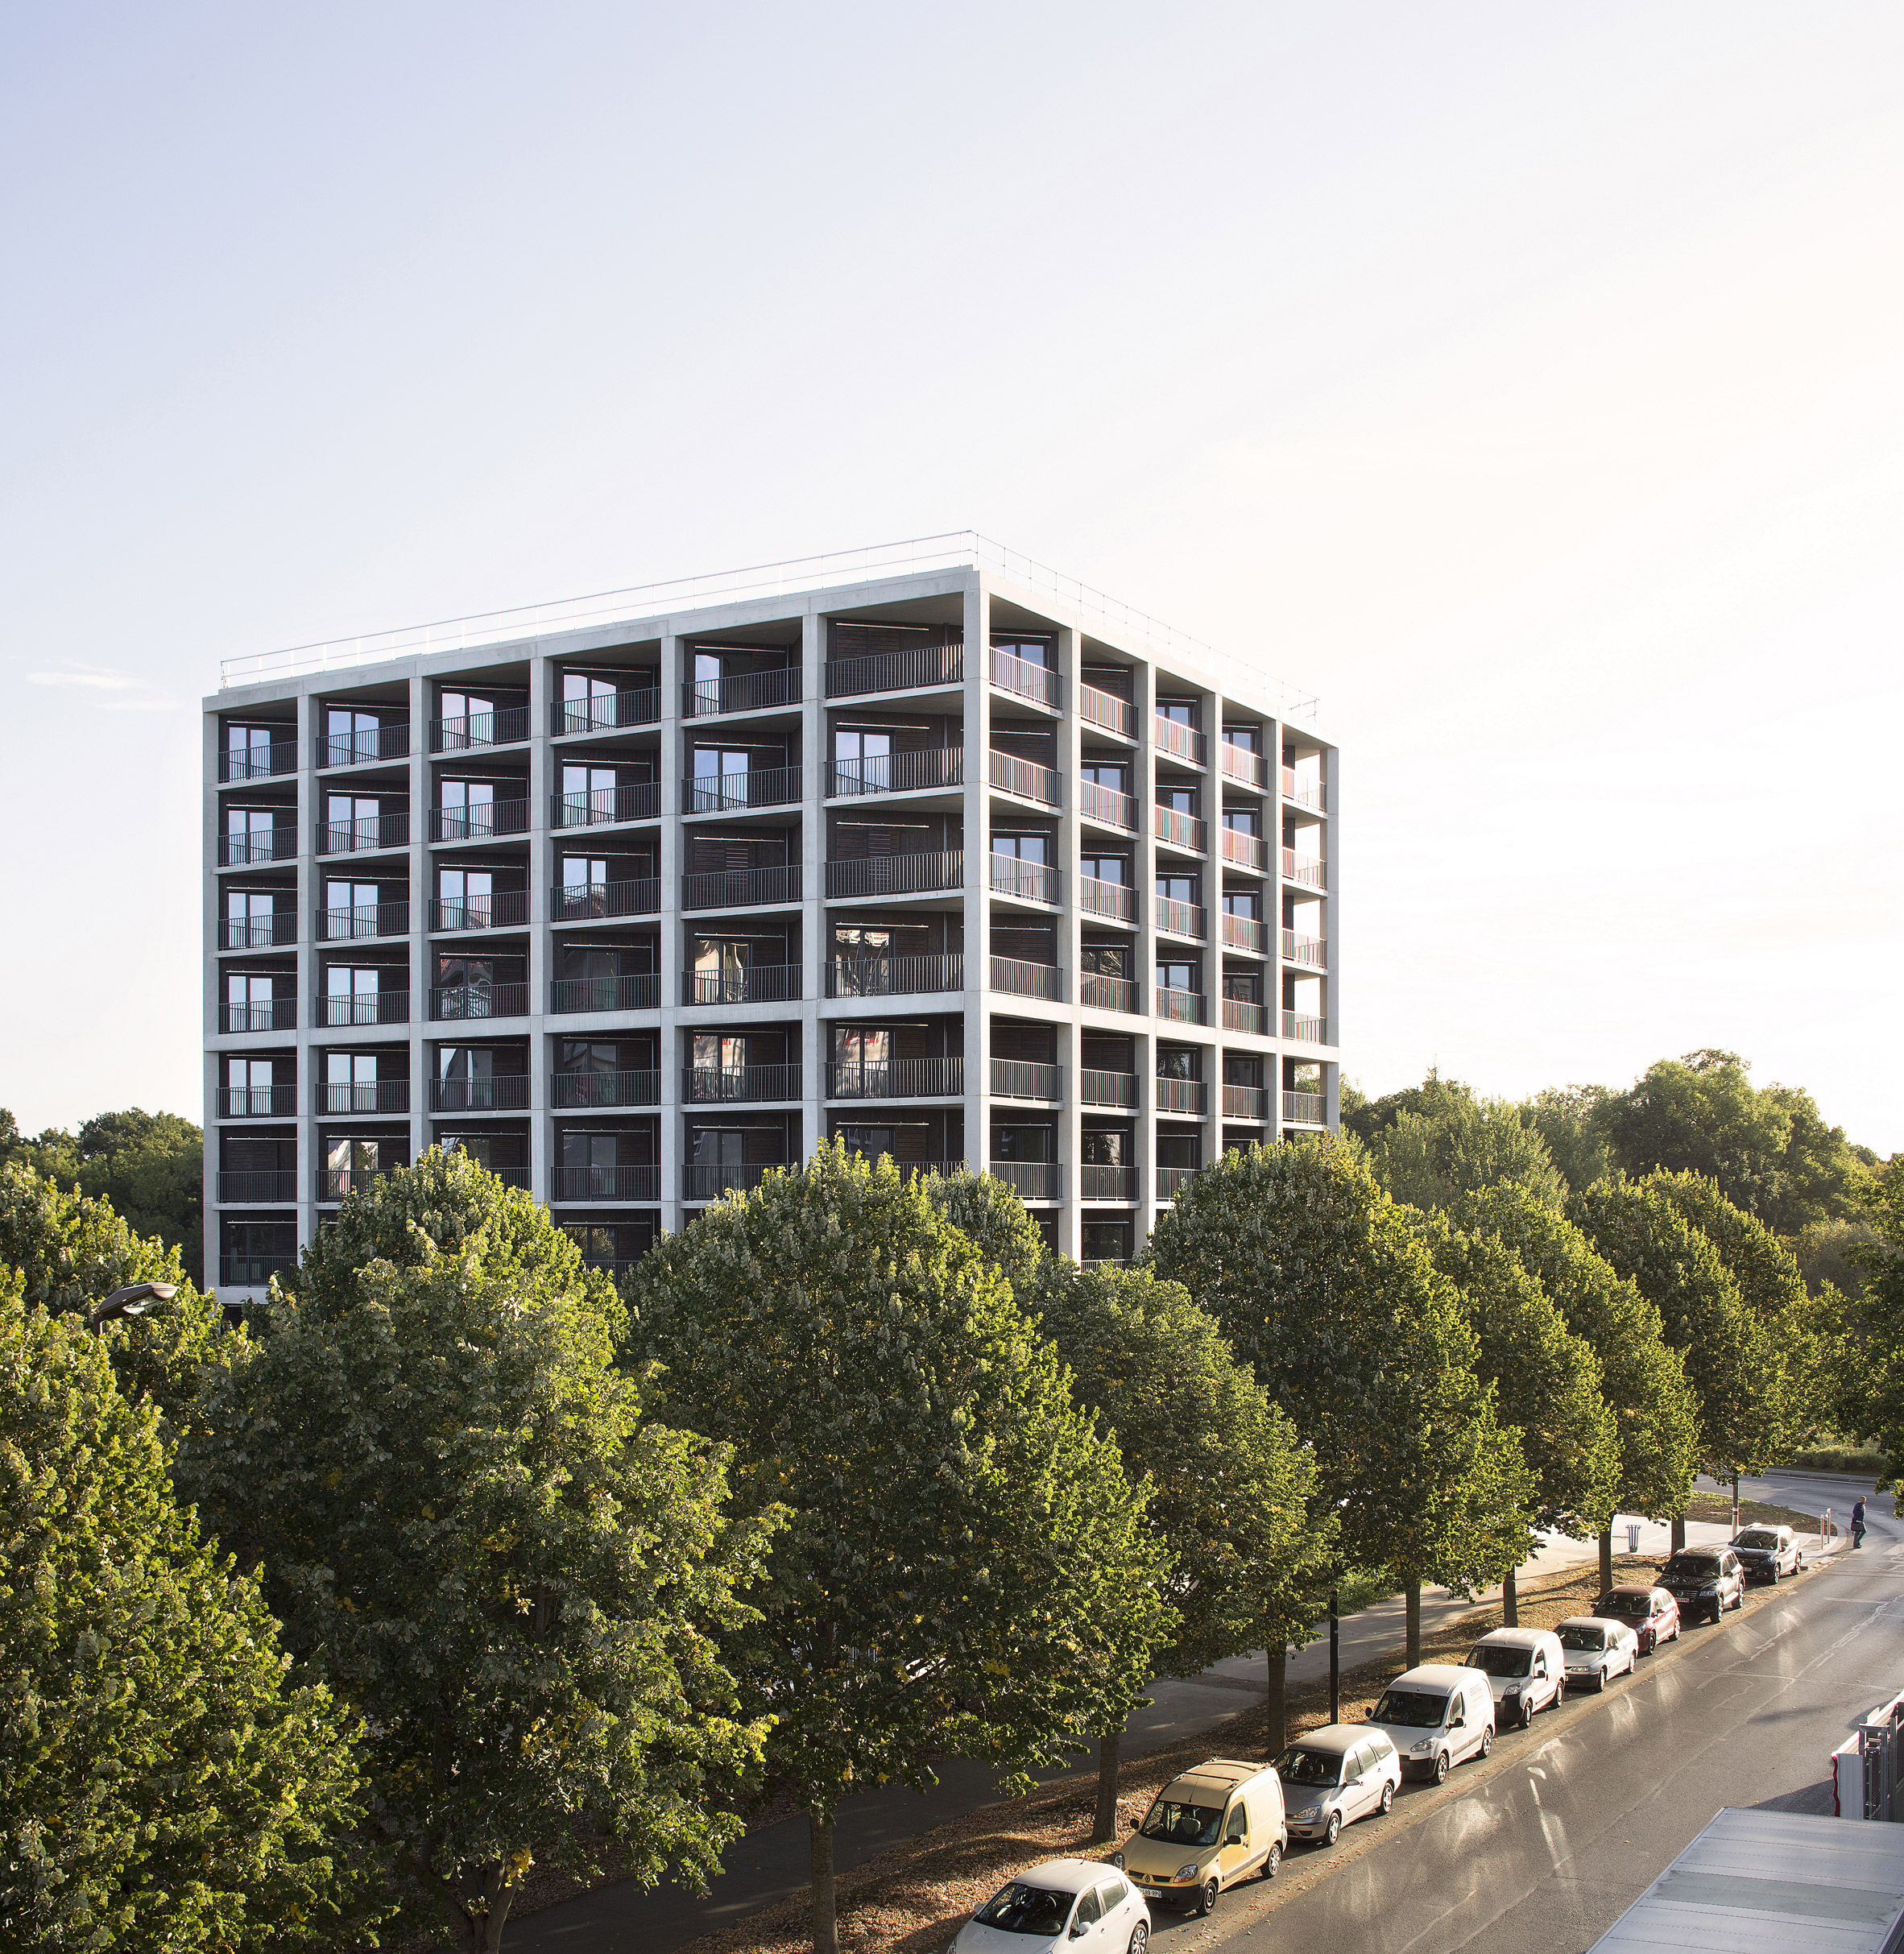 Student housing block by Atelier Villemard et Associés (AVA) in Champs-sur-Marne